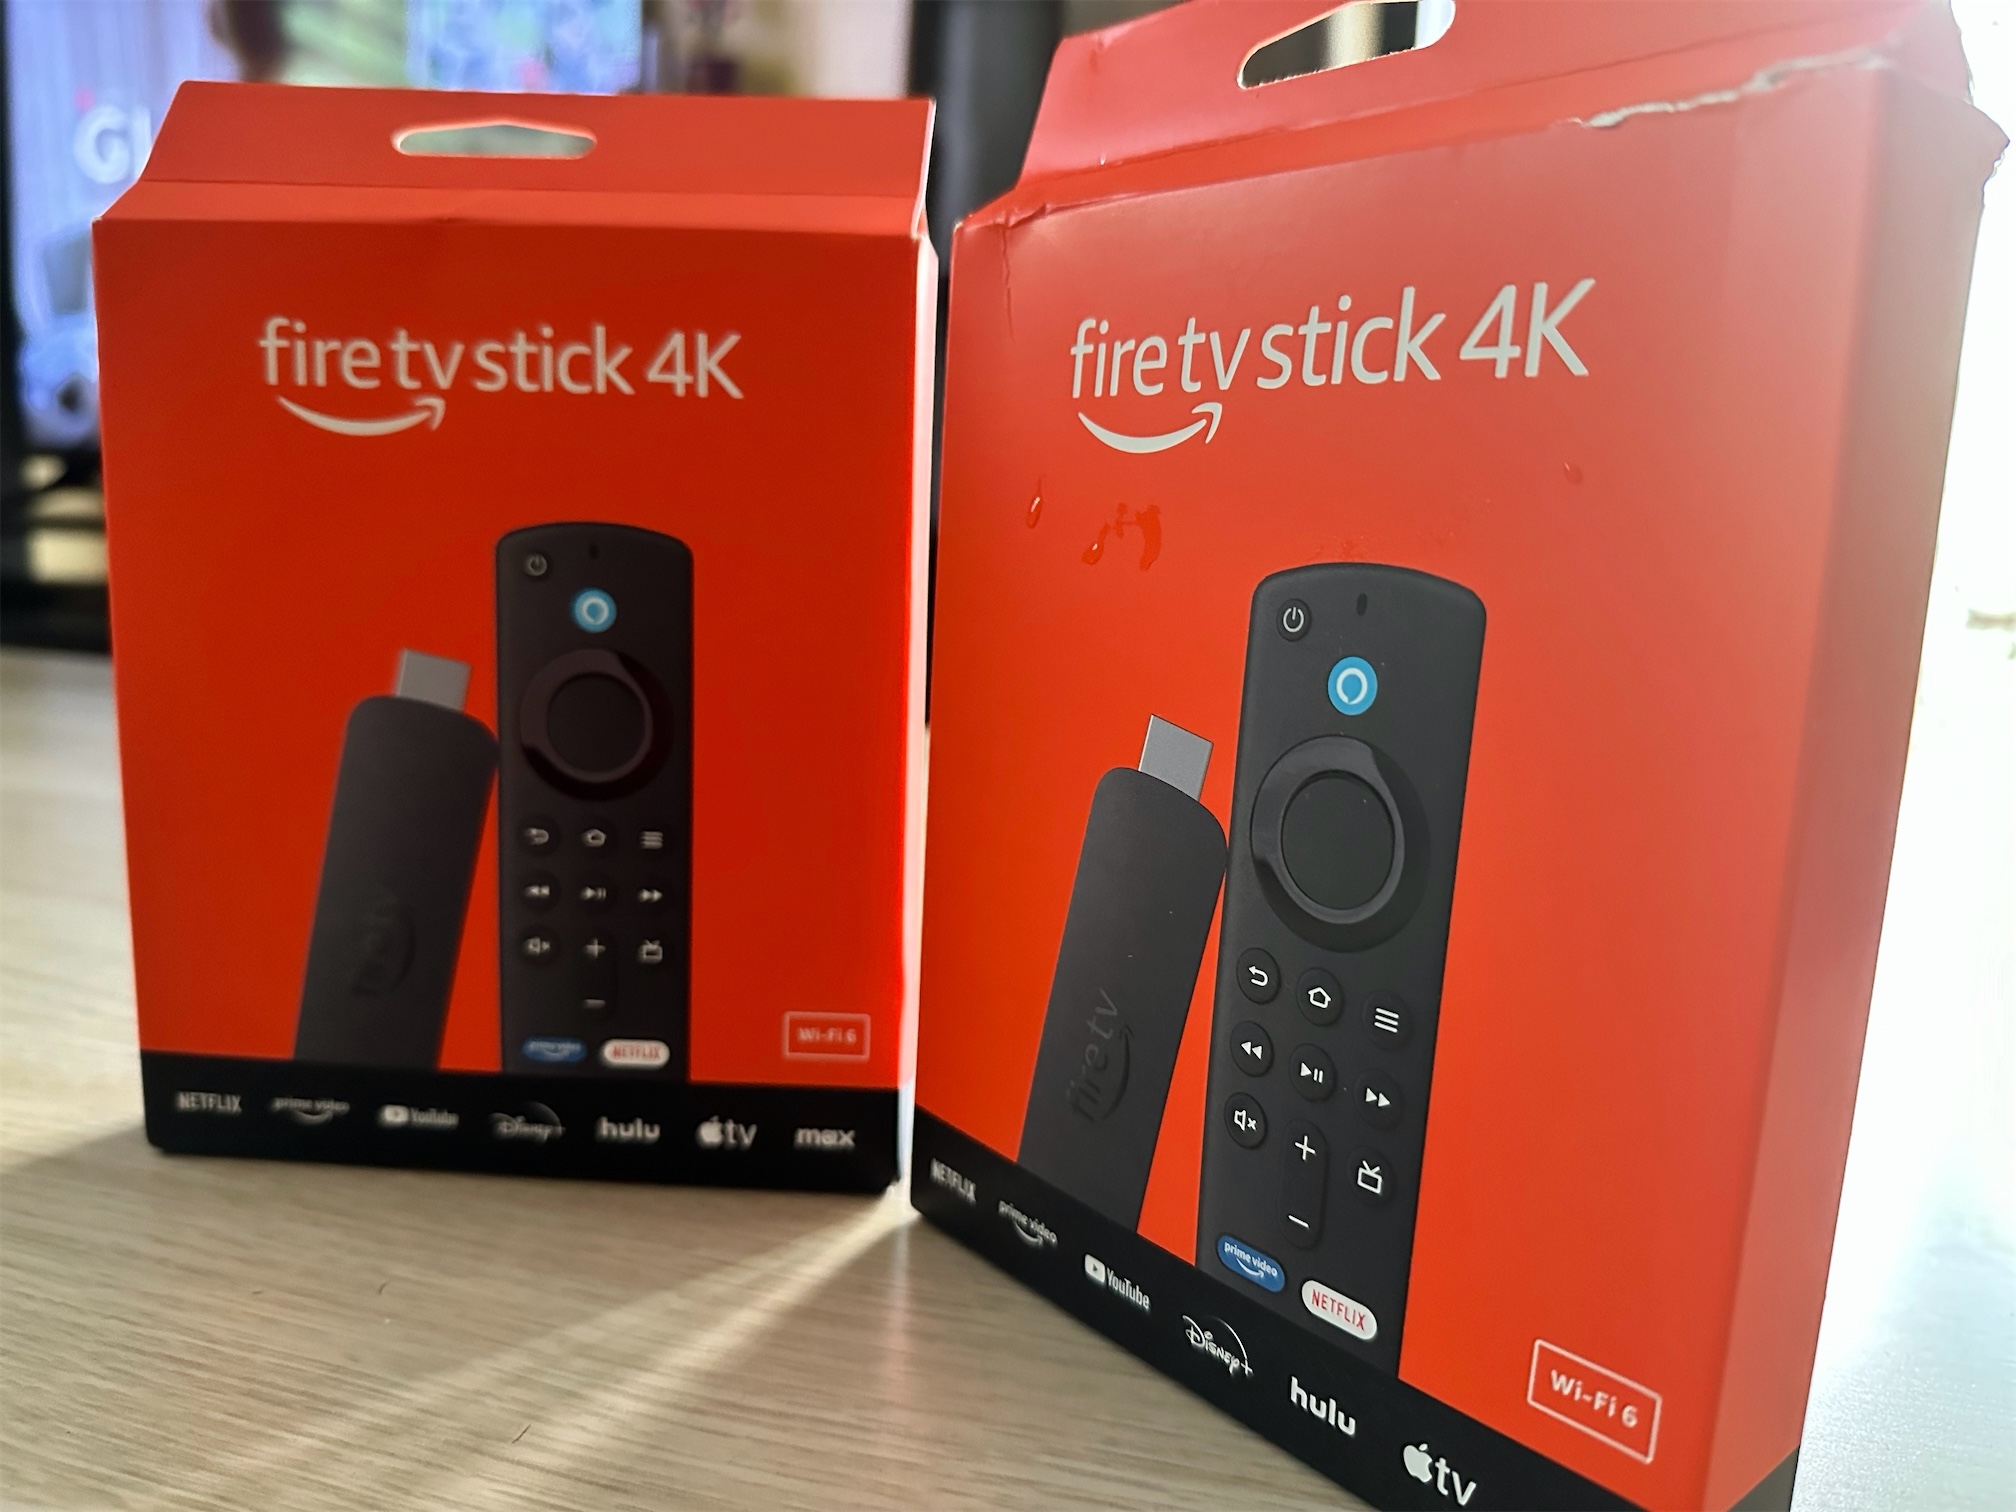 accesorios para electronica - Fire Stick 4K con WIFI 